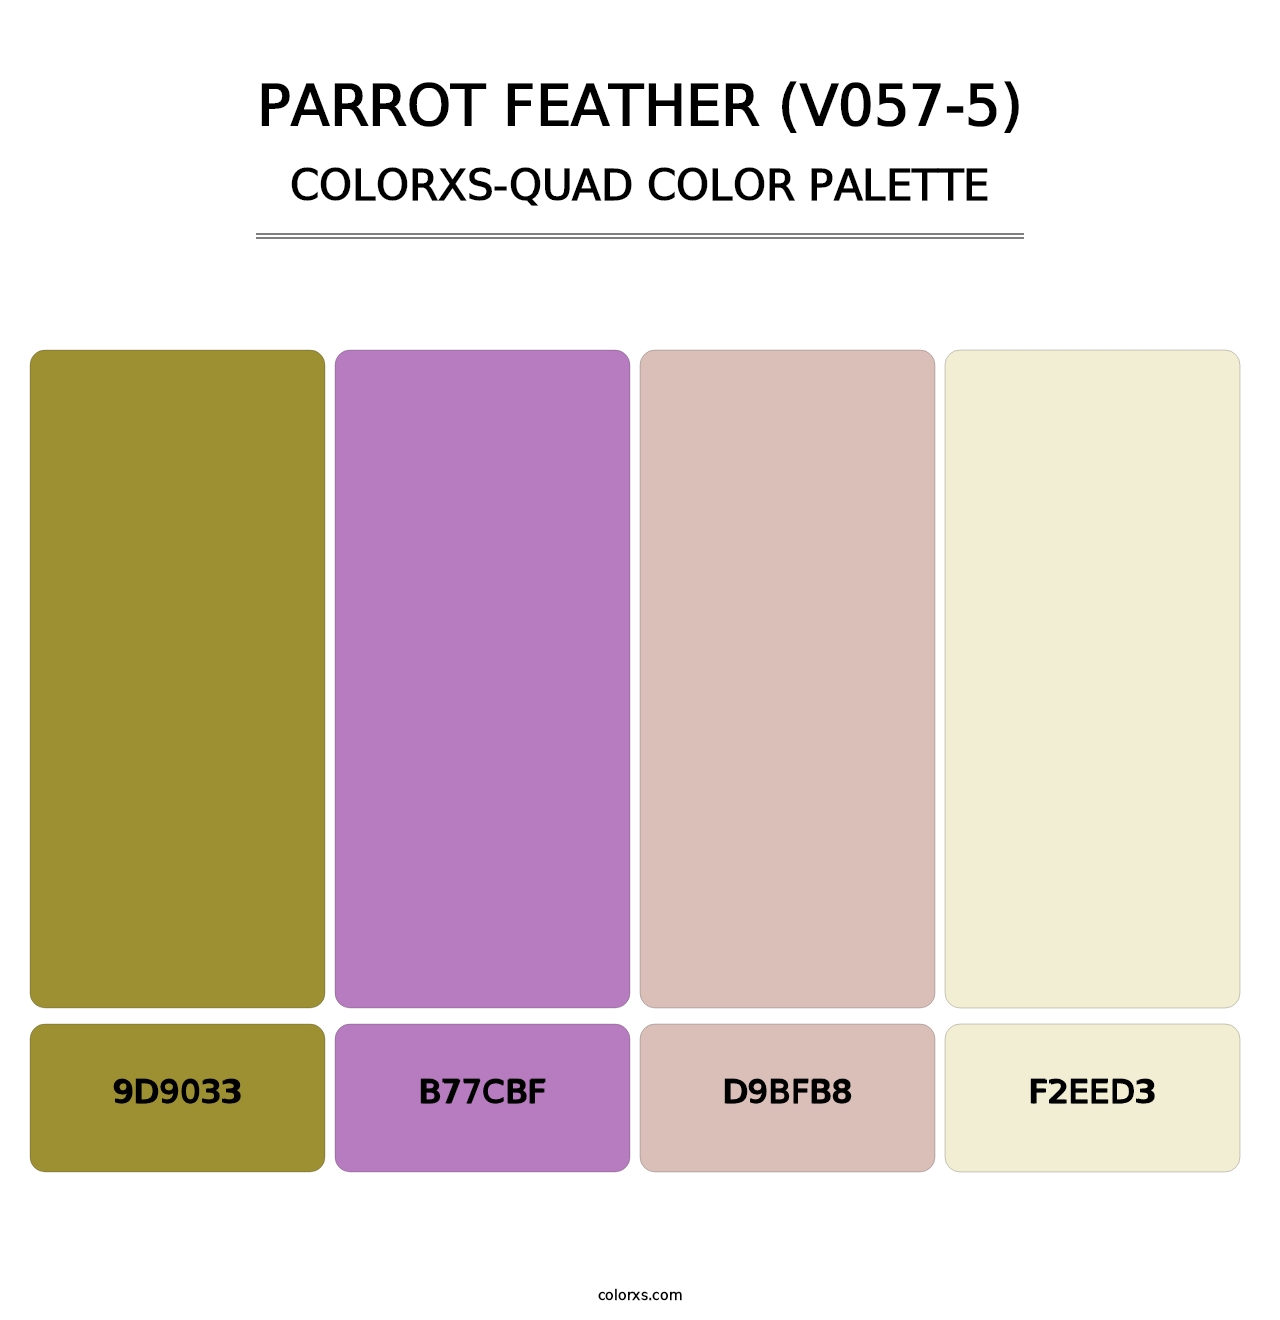 Parrot Feather (V057-5) - Colorxs Quad Palette